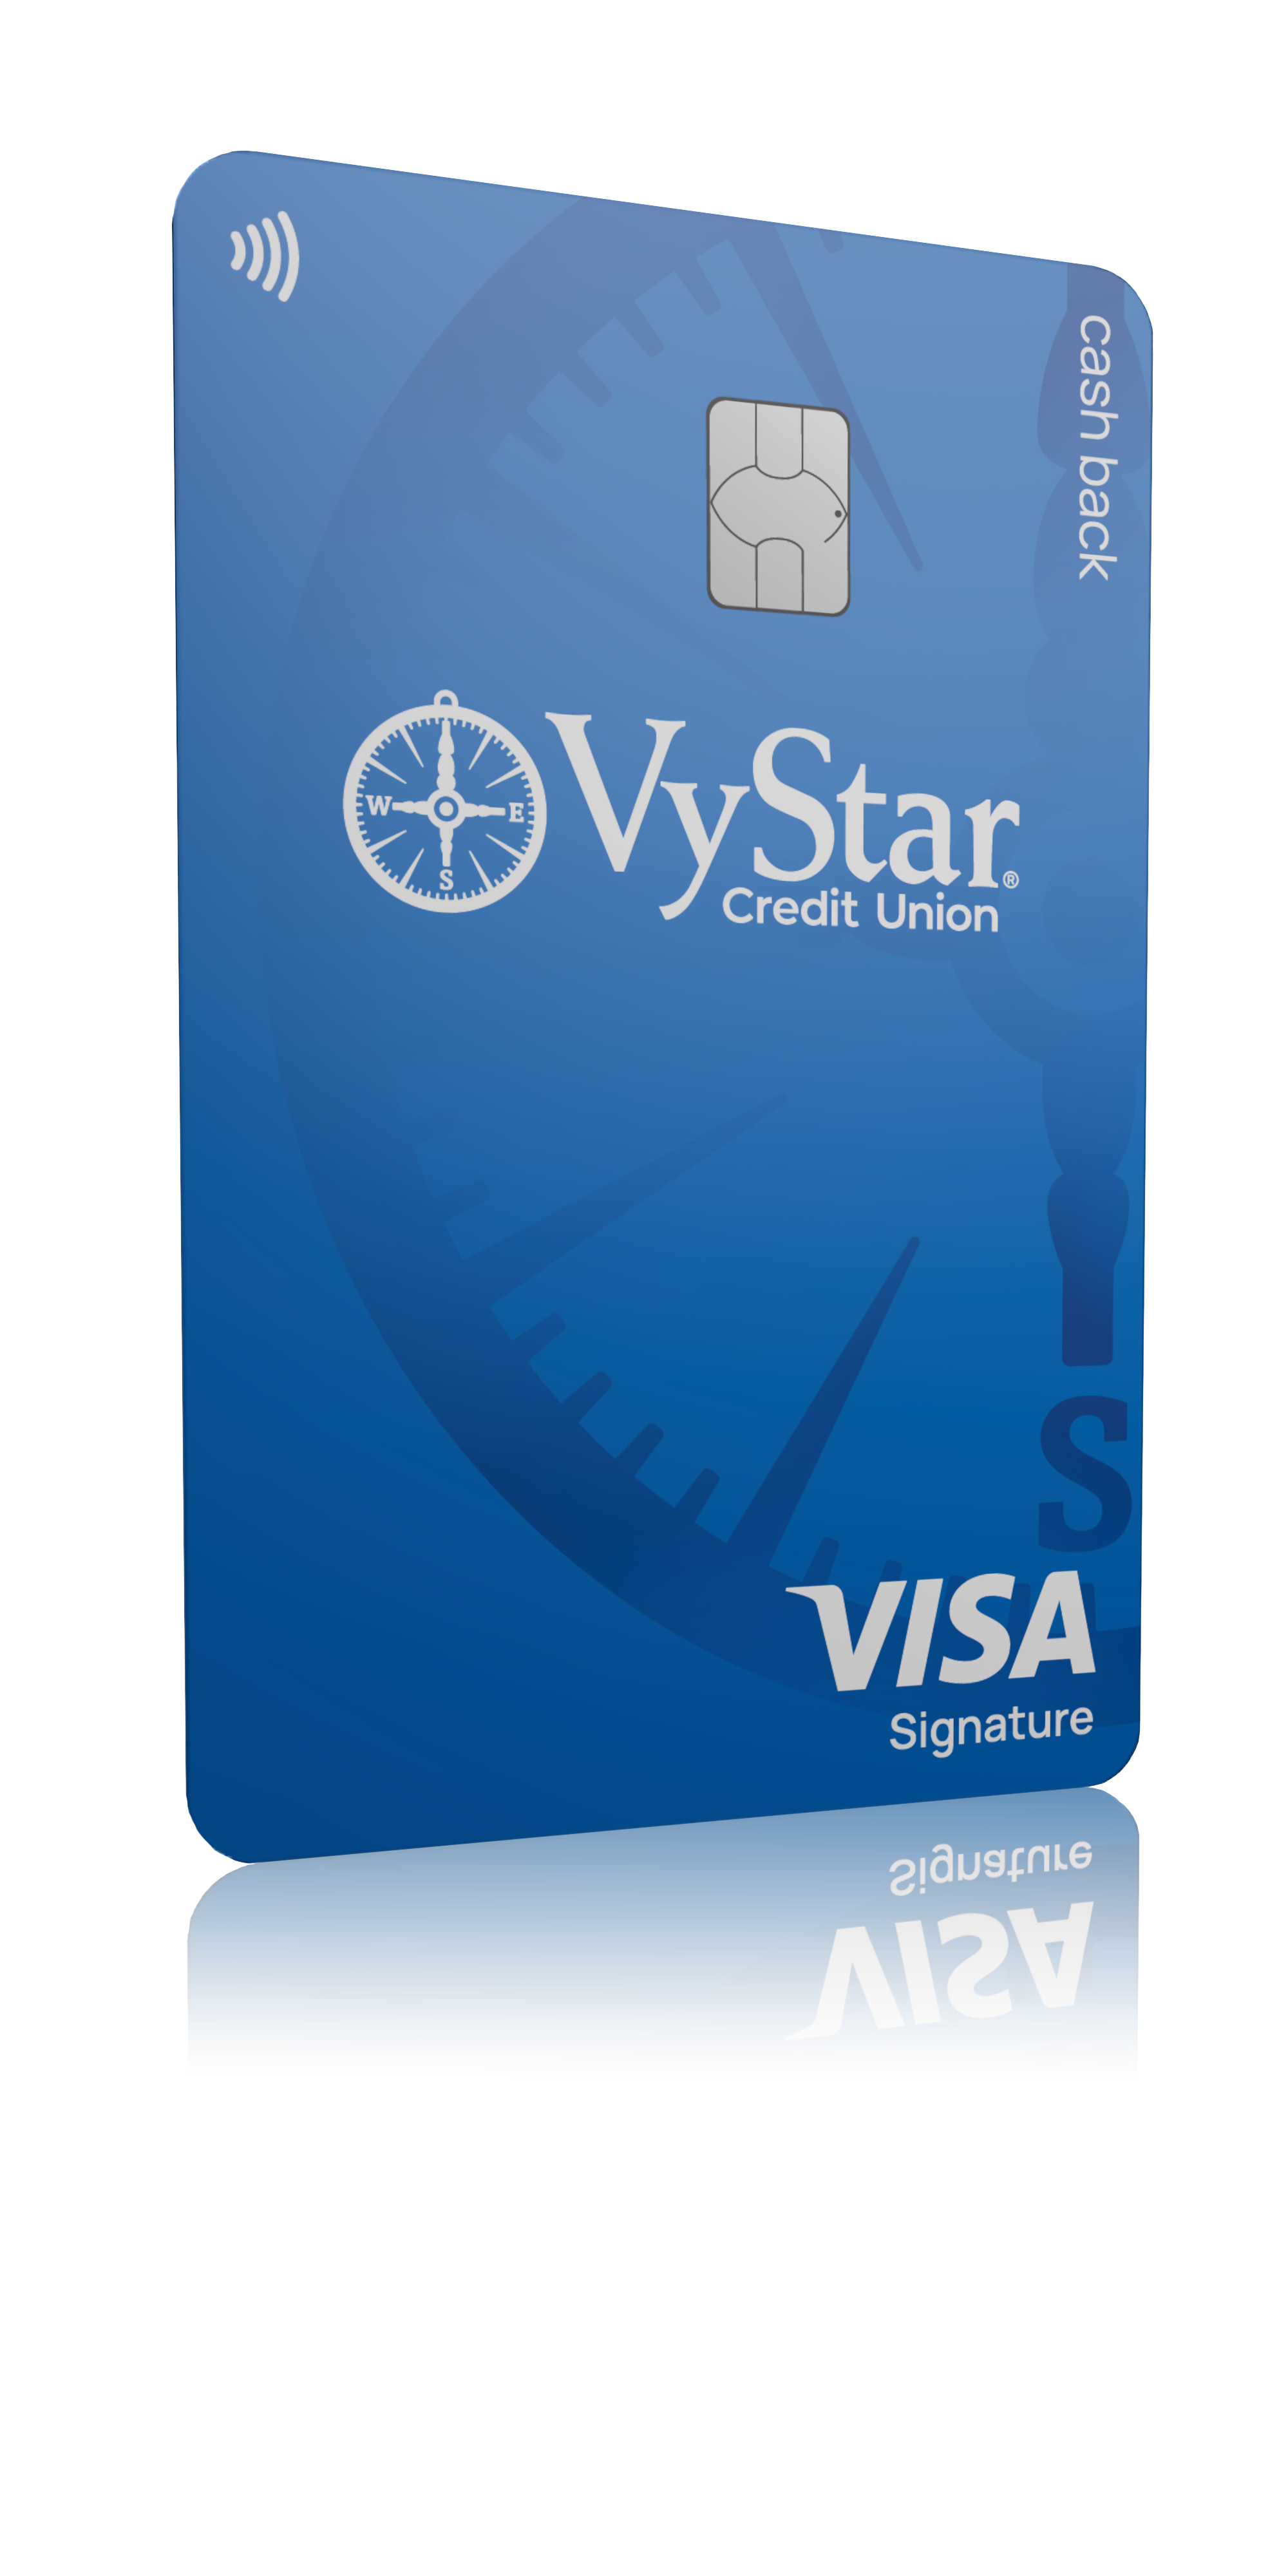 VyStar cash back credit card